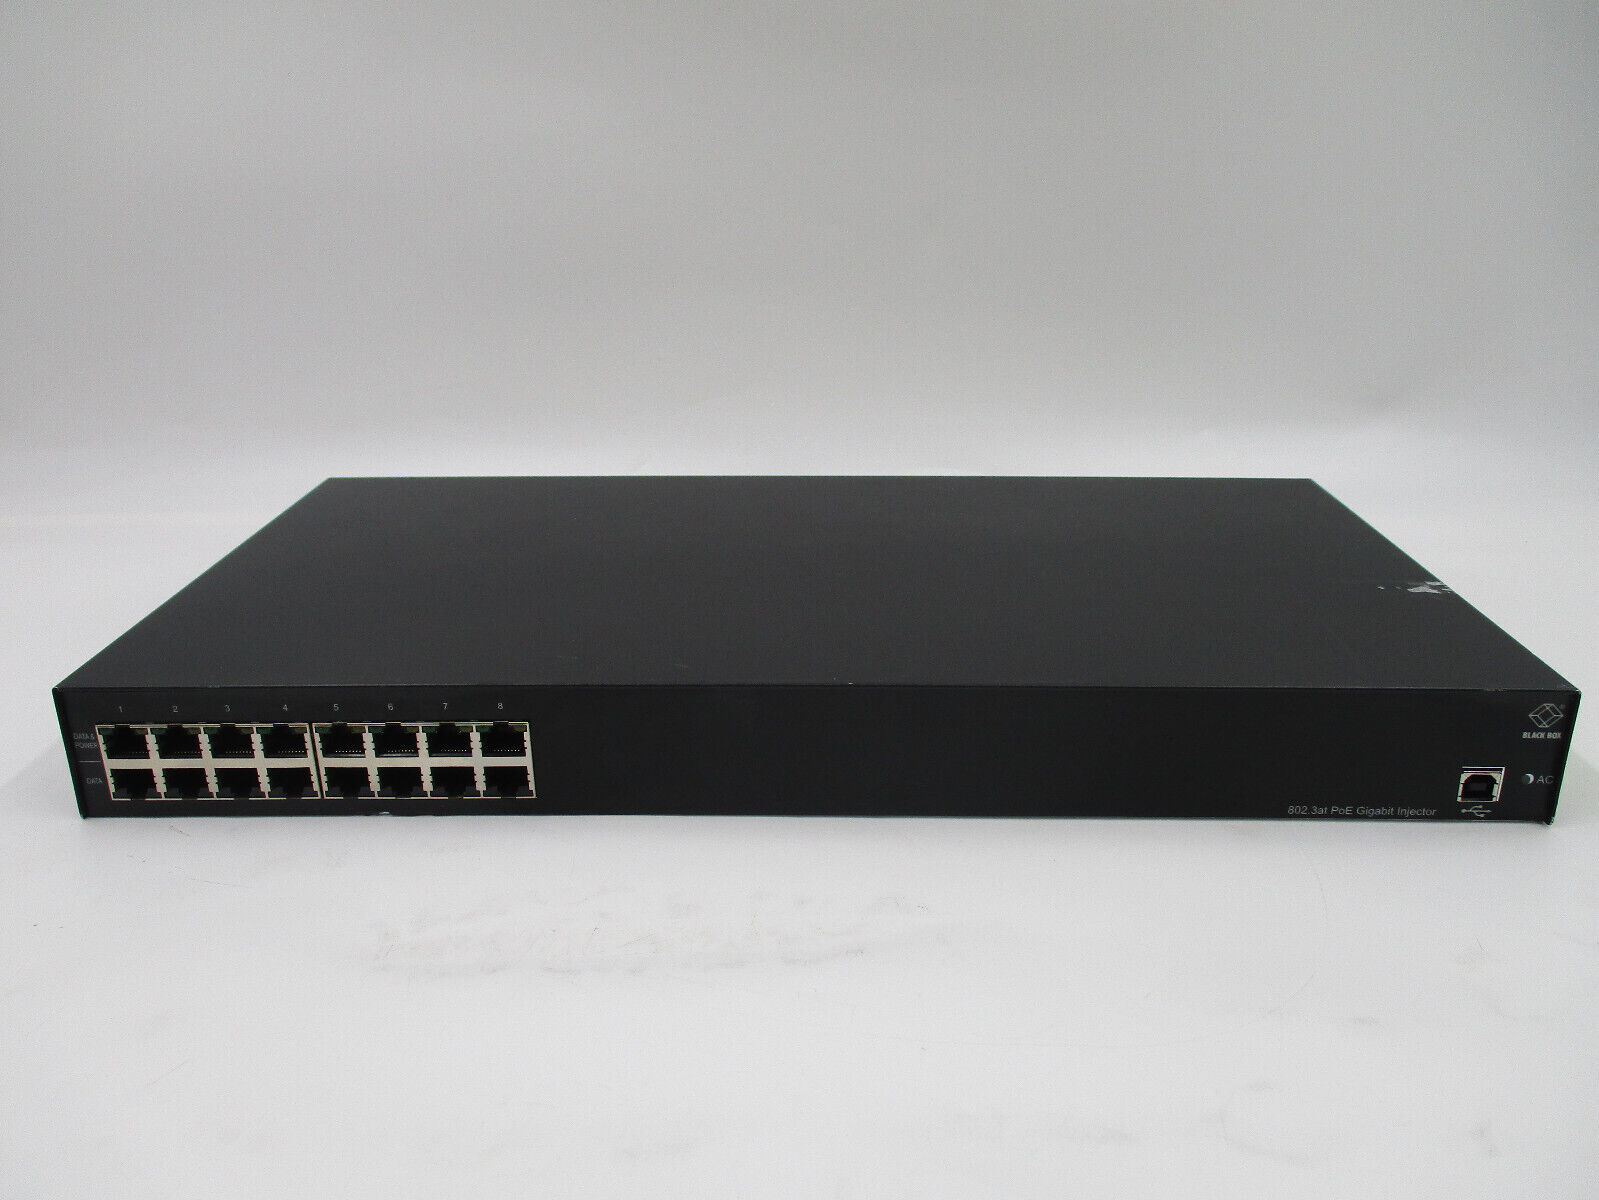 Black Box LPJ008A 16-Port PoE 802.3af Gigabit Injector Switch Tested Working